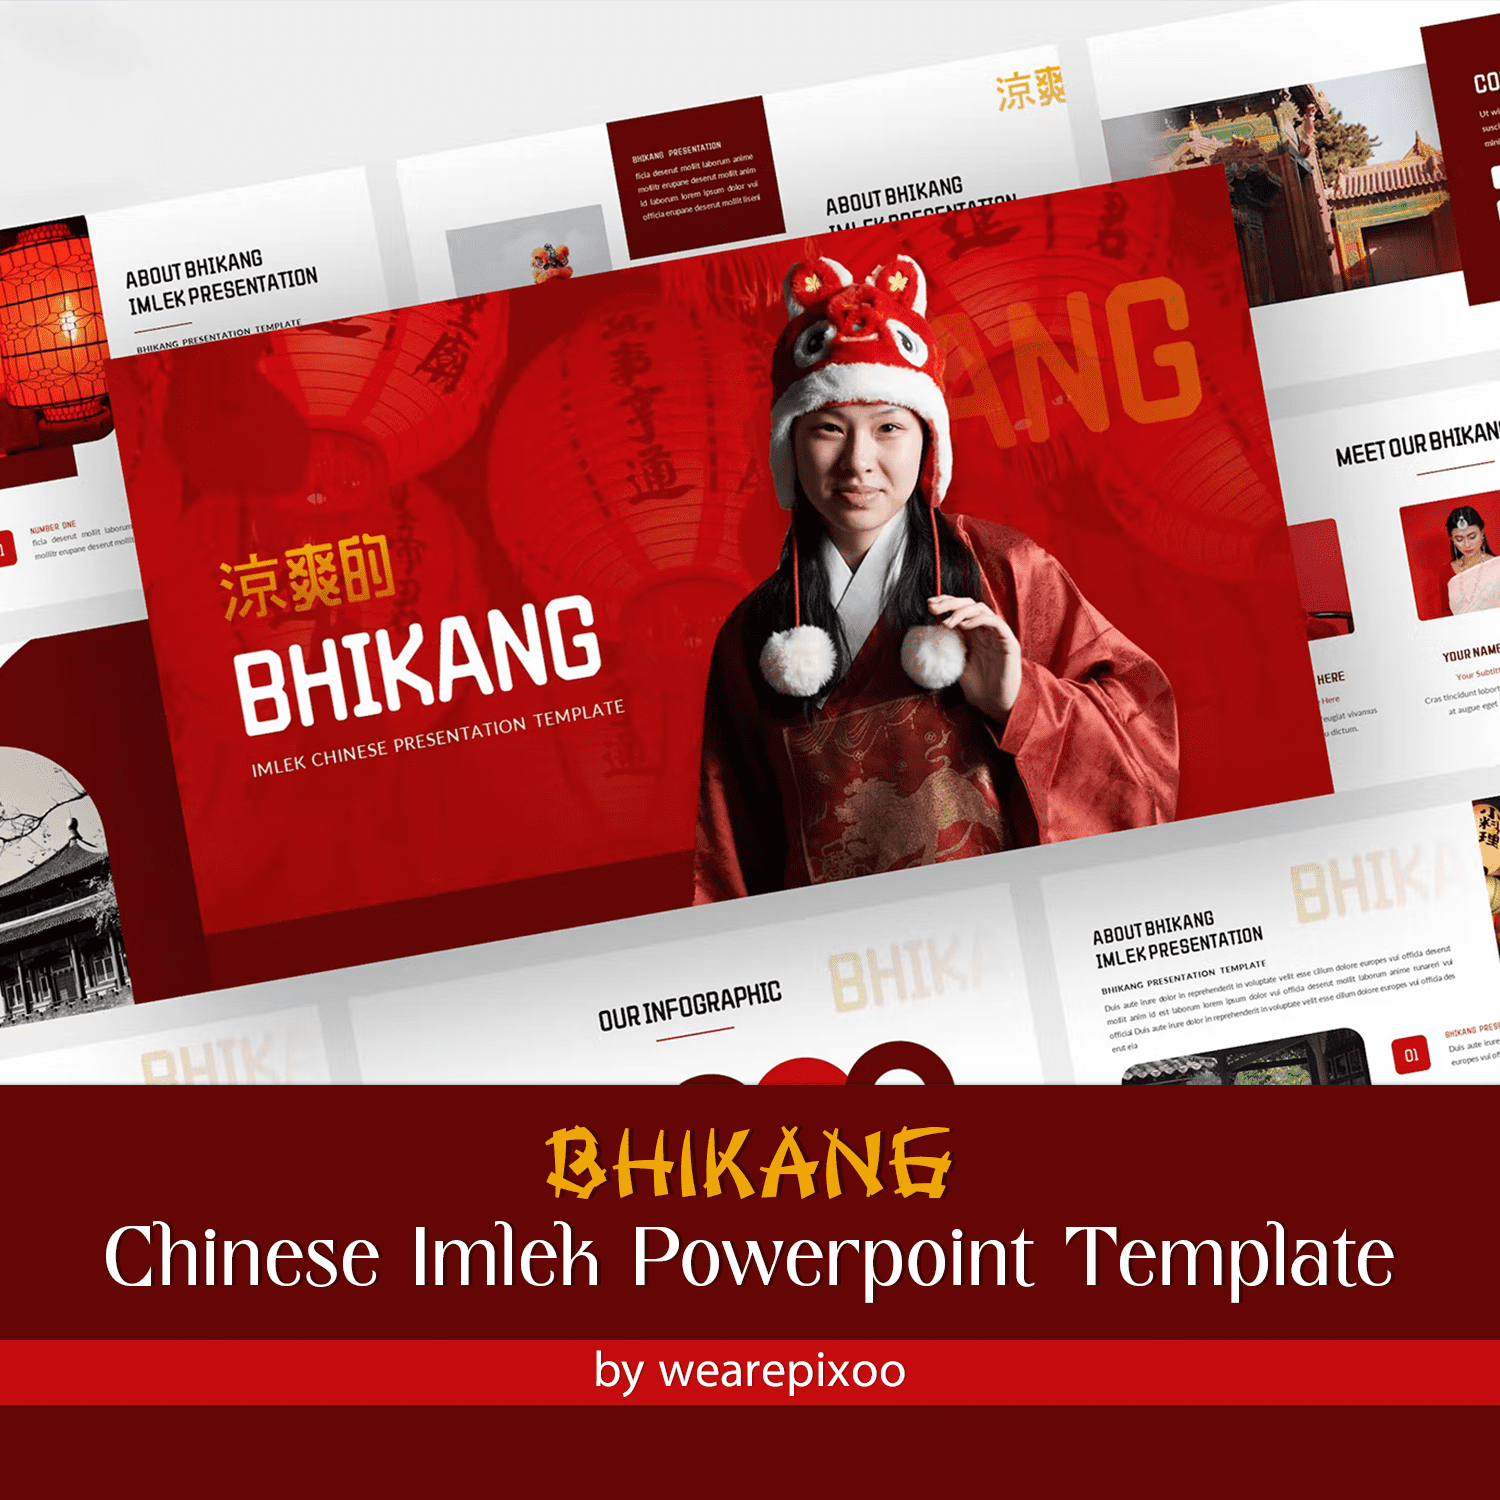 Infographic of Bhikang - Chinese Imlek Powerpoint Template.